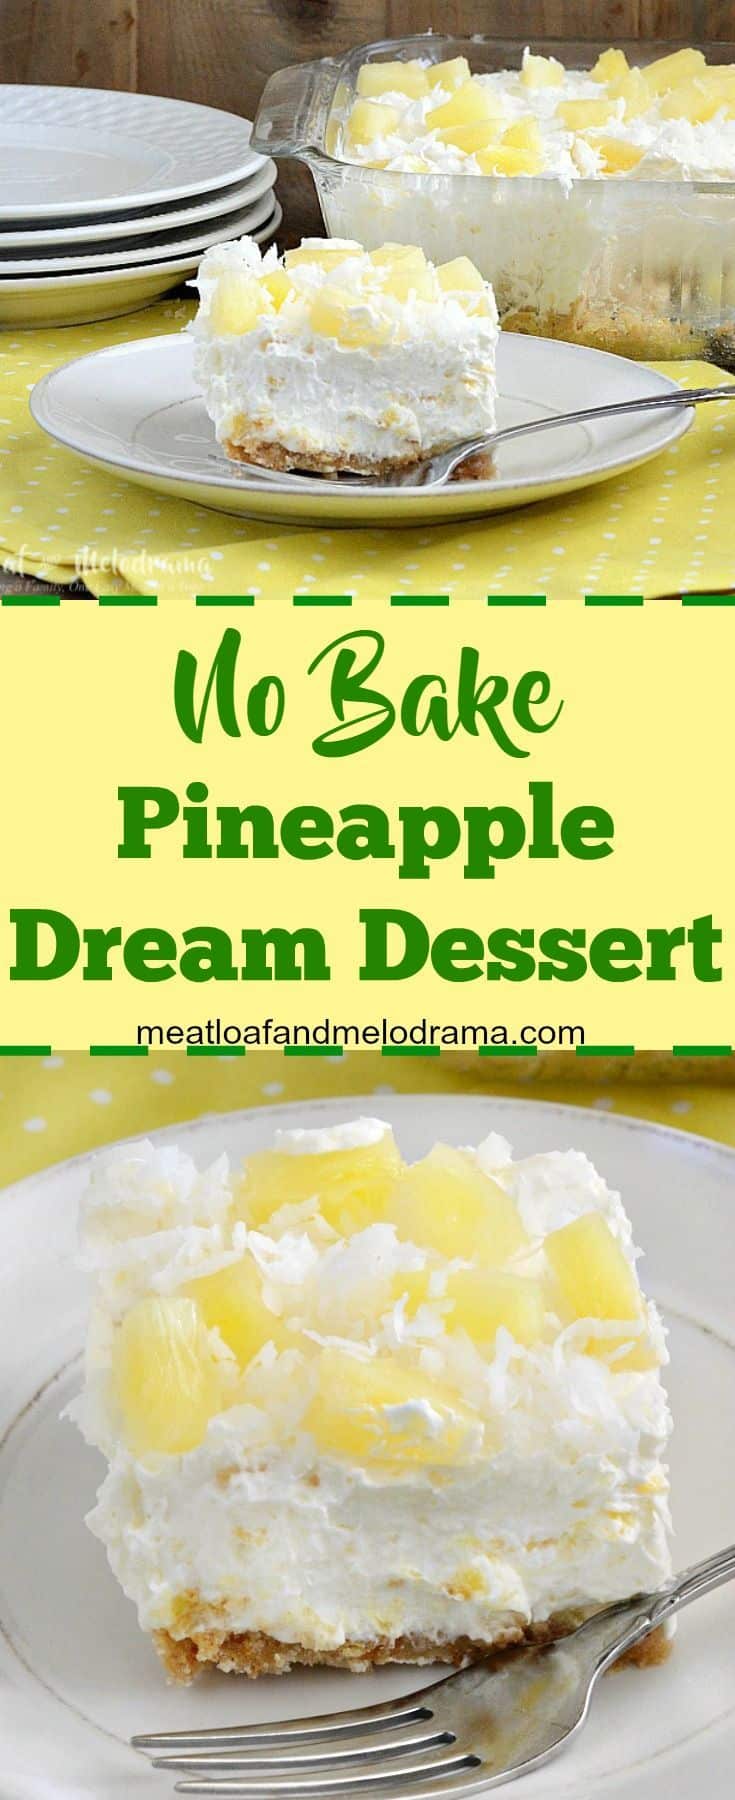 No-bake pineapple dream dessert